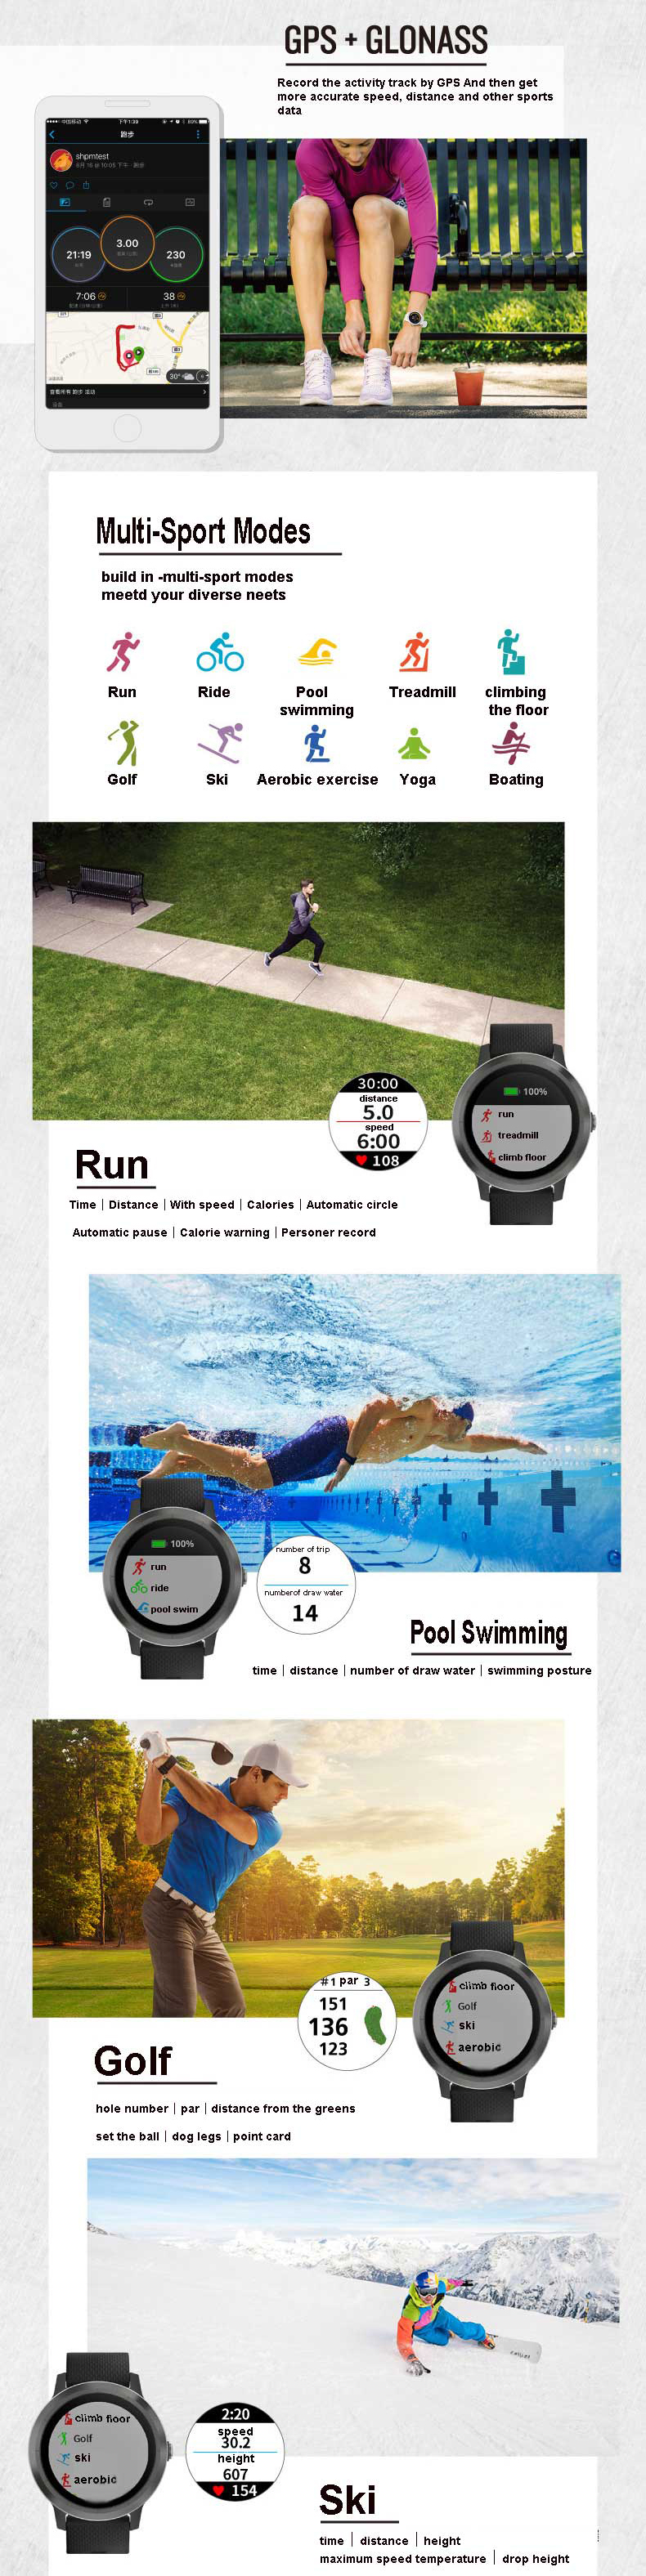 Garmin Vivoactive3 1.2Inch Touch Screen GPS+GLONASS Muti-sport Modes NFC Heart Rate Smart Watch 43